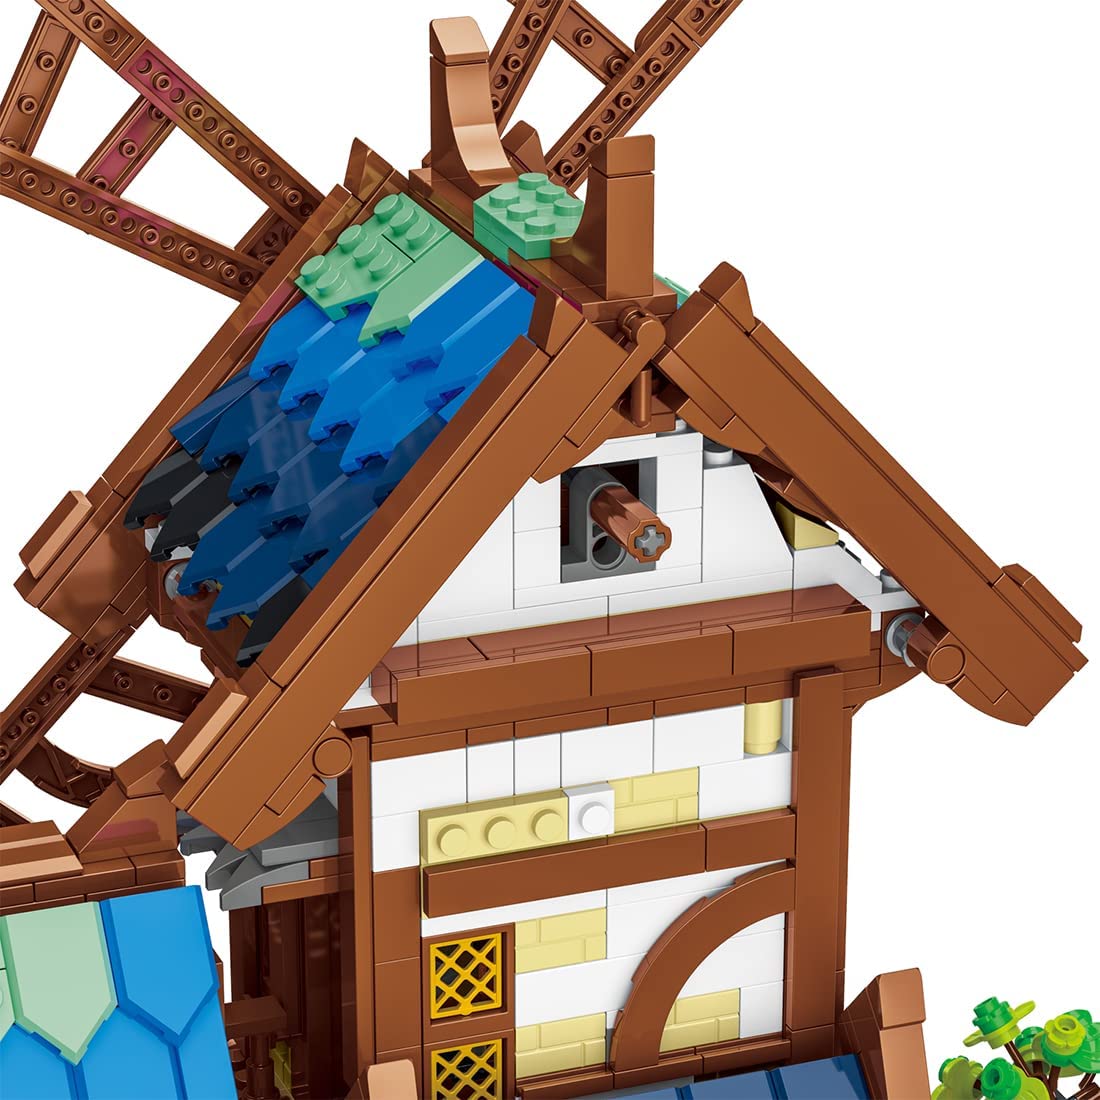 urge mittelalterliche Windmühle 50103 Klemmbaustein Set